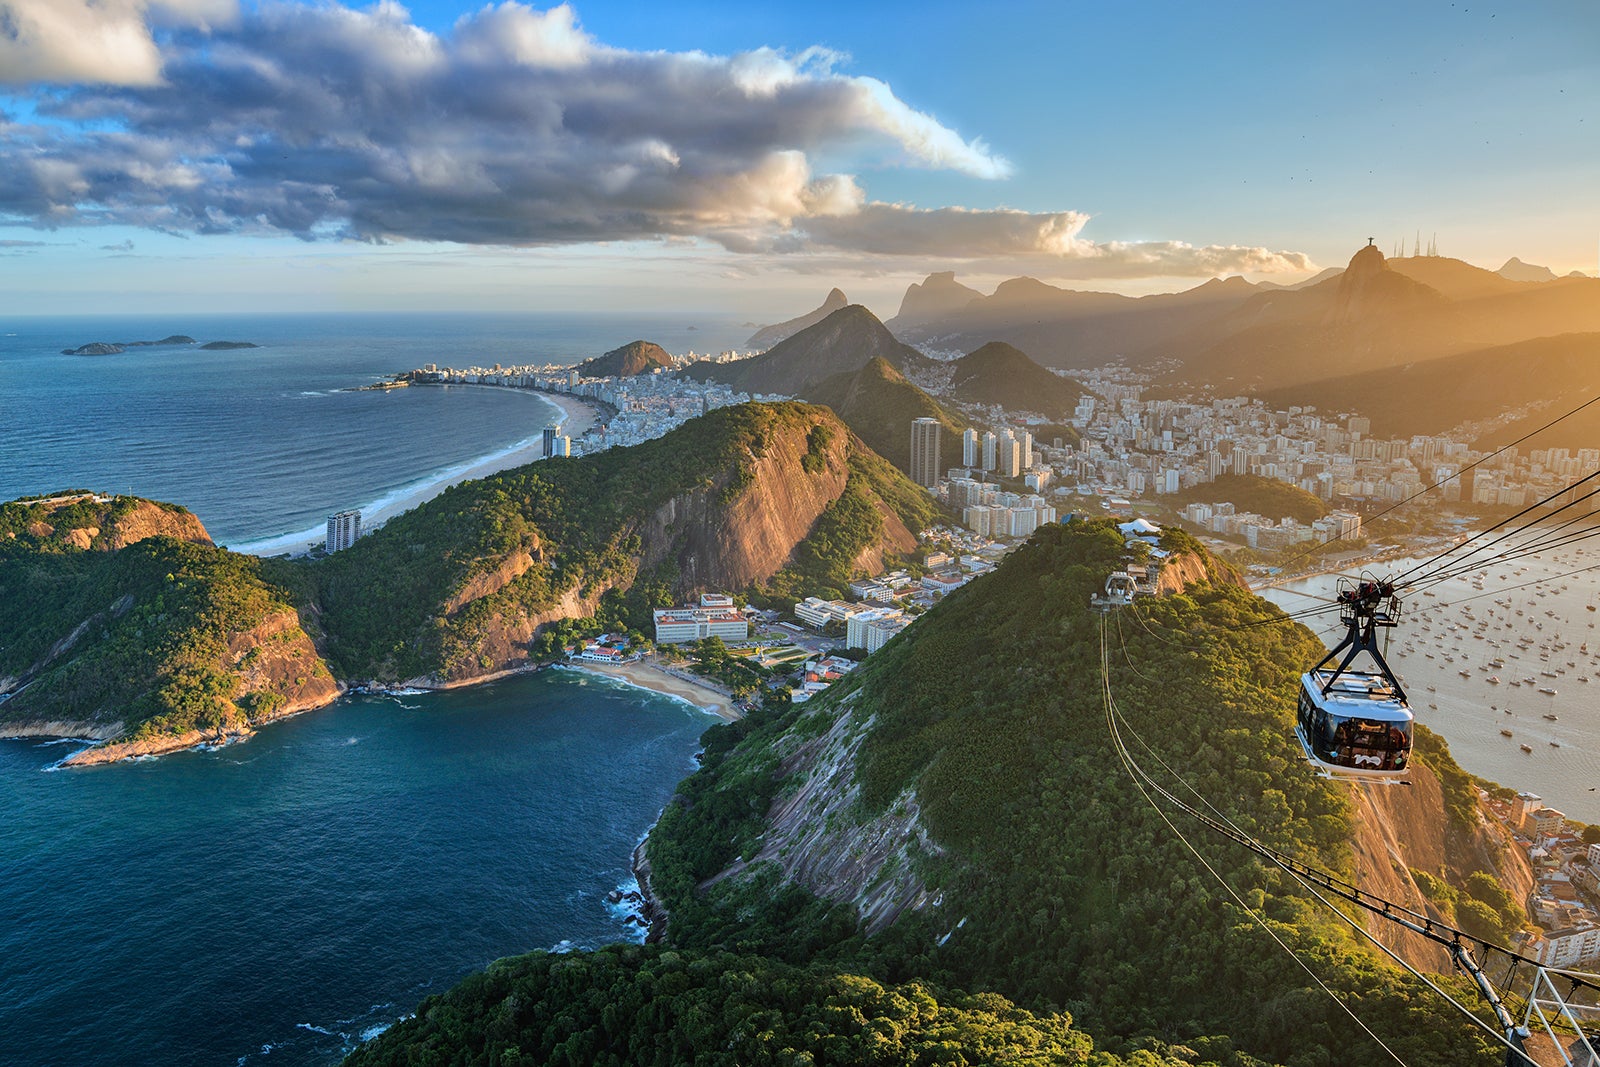 Lugar turístico do Rio de Janeiro qual escolher